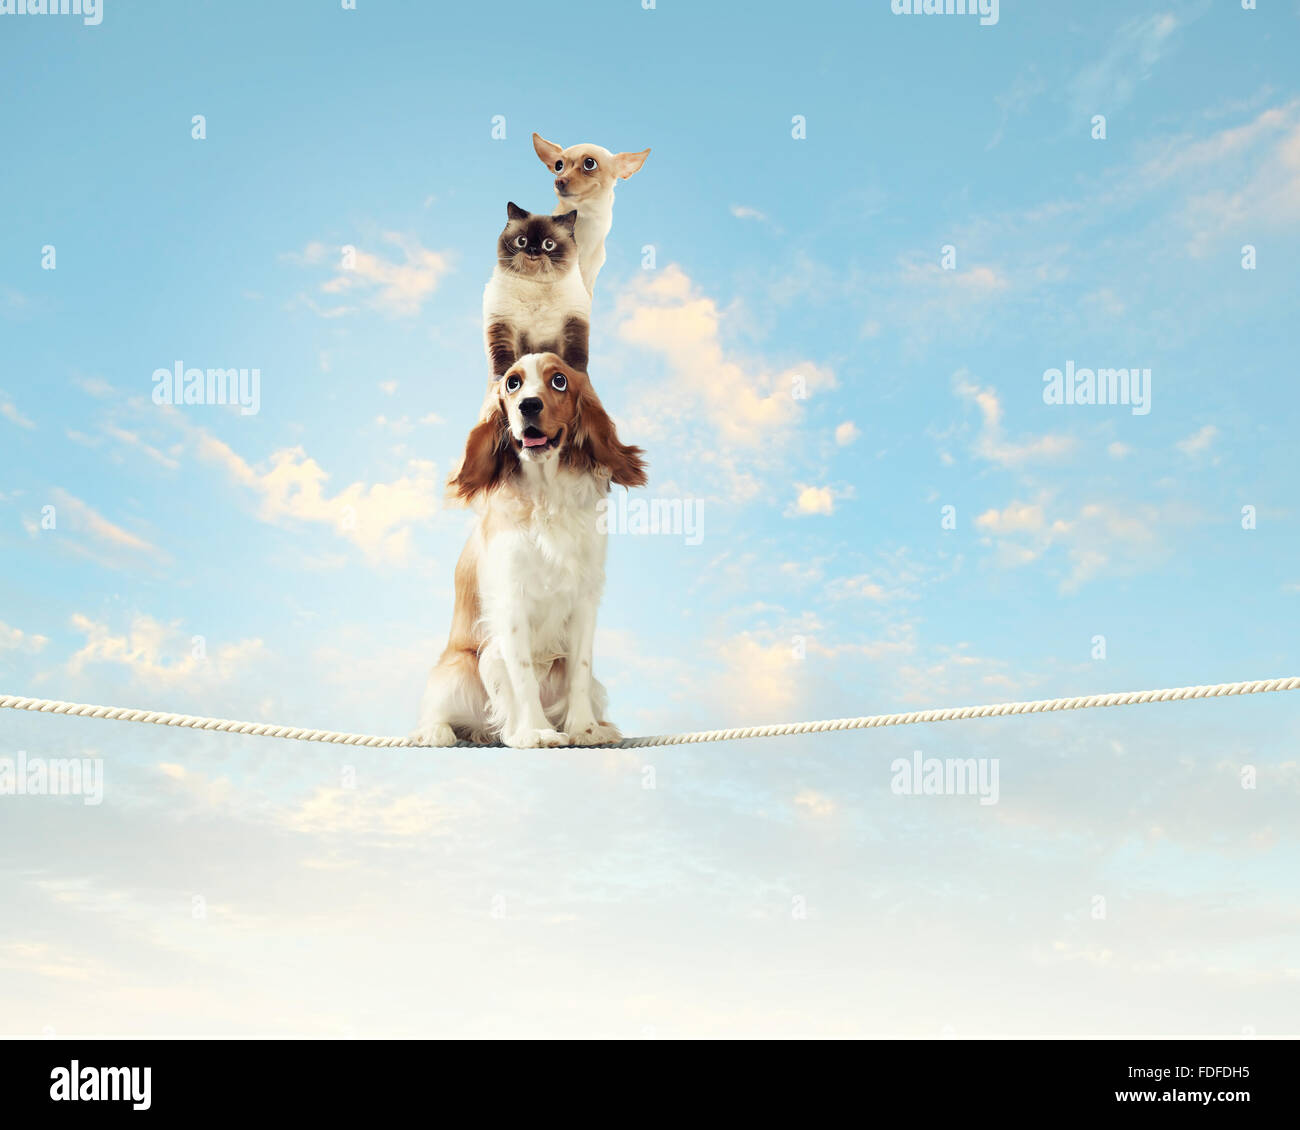 Image of spaniel dog balancing on rope Stock Photo